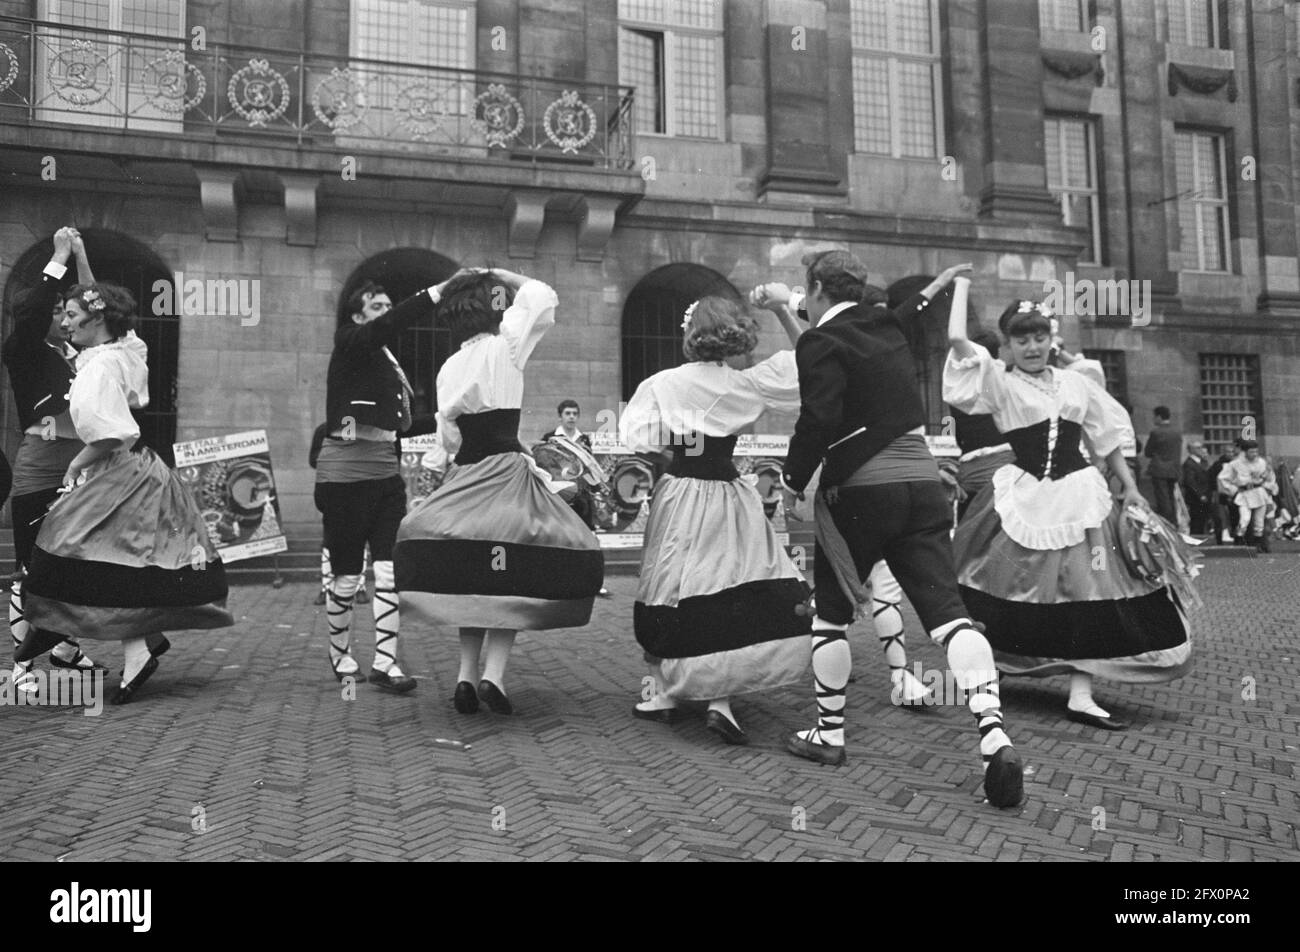 Folklore dance italy Banque d'images noir et blanc - Alamy